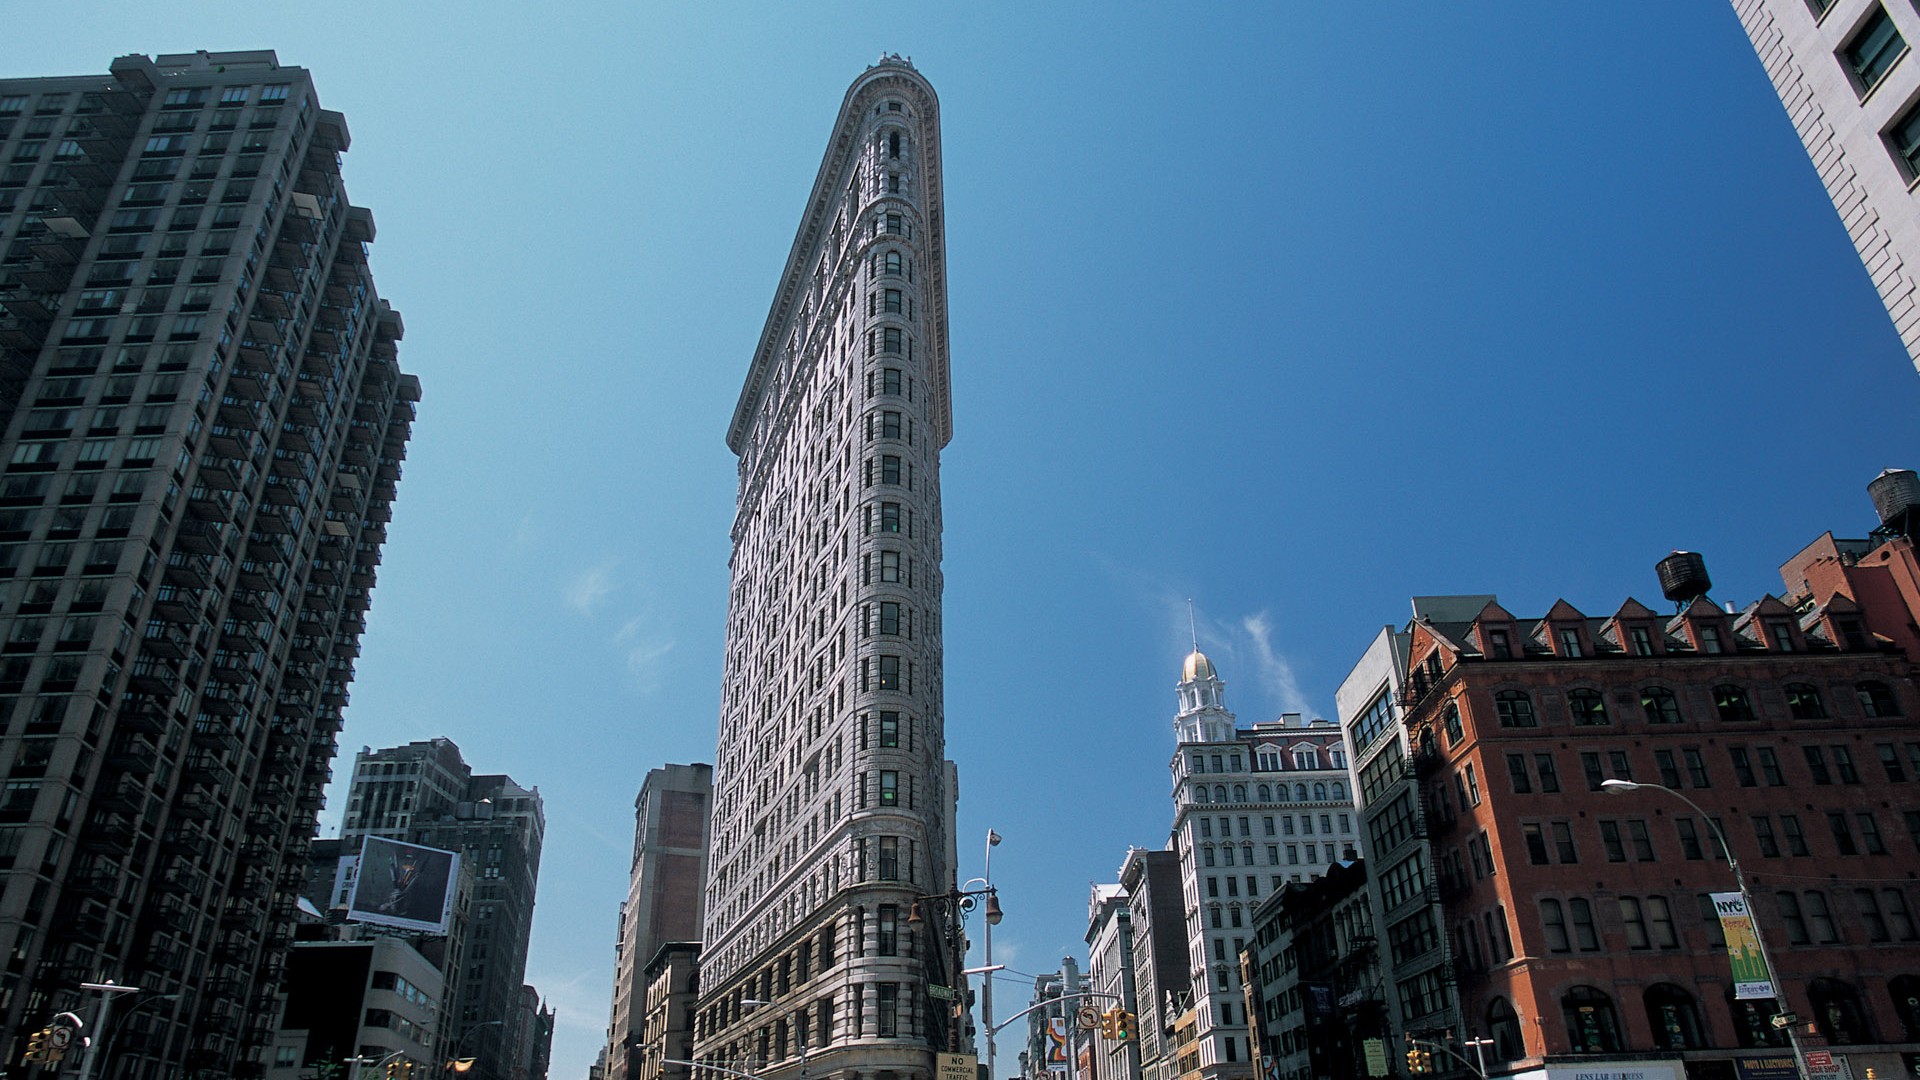 La bulliciosa ciudad de Nueva York Edificio #8 - 1920x1080